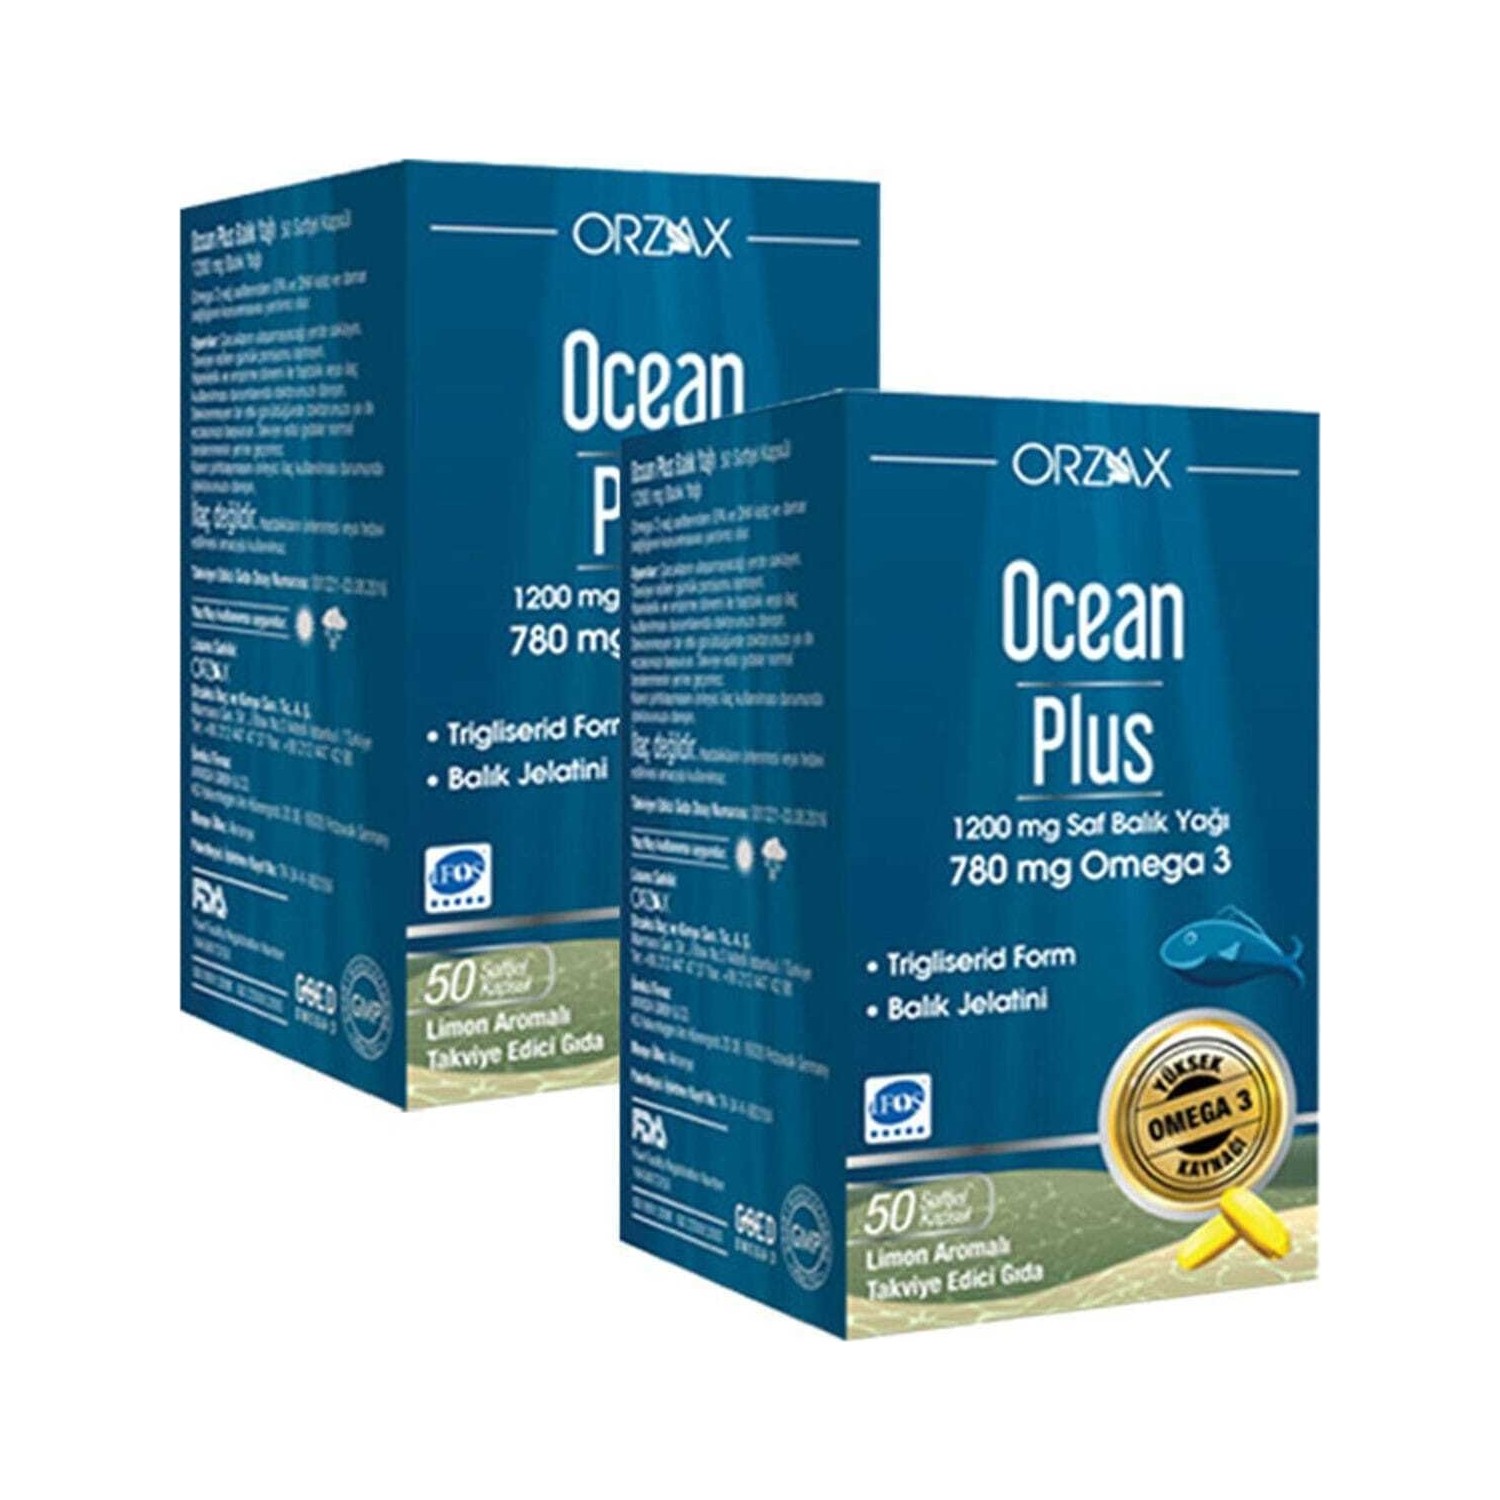 Омега-3 Plus Orzax 1200 мг, 2 упаковки по 50 капсул фото